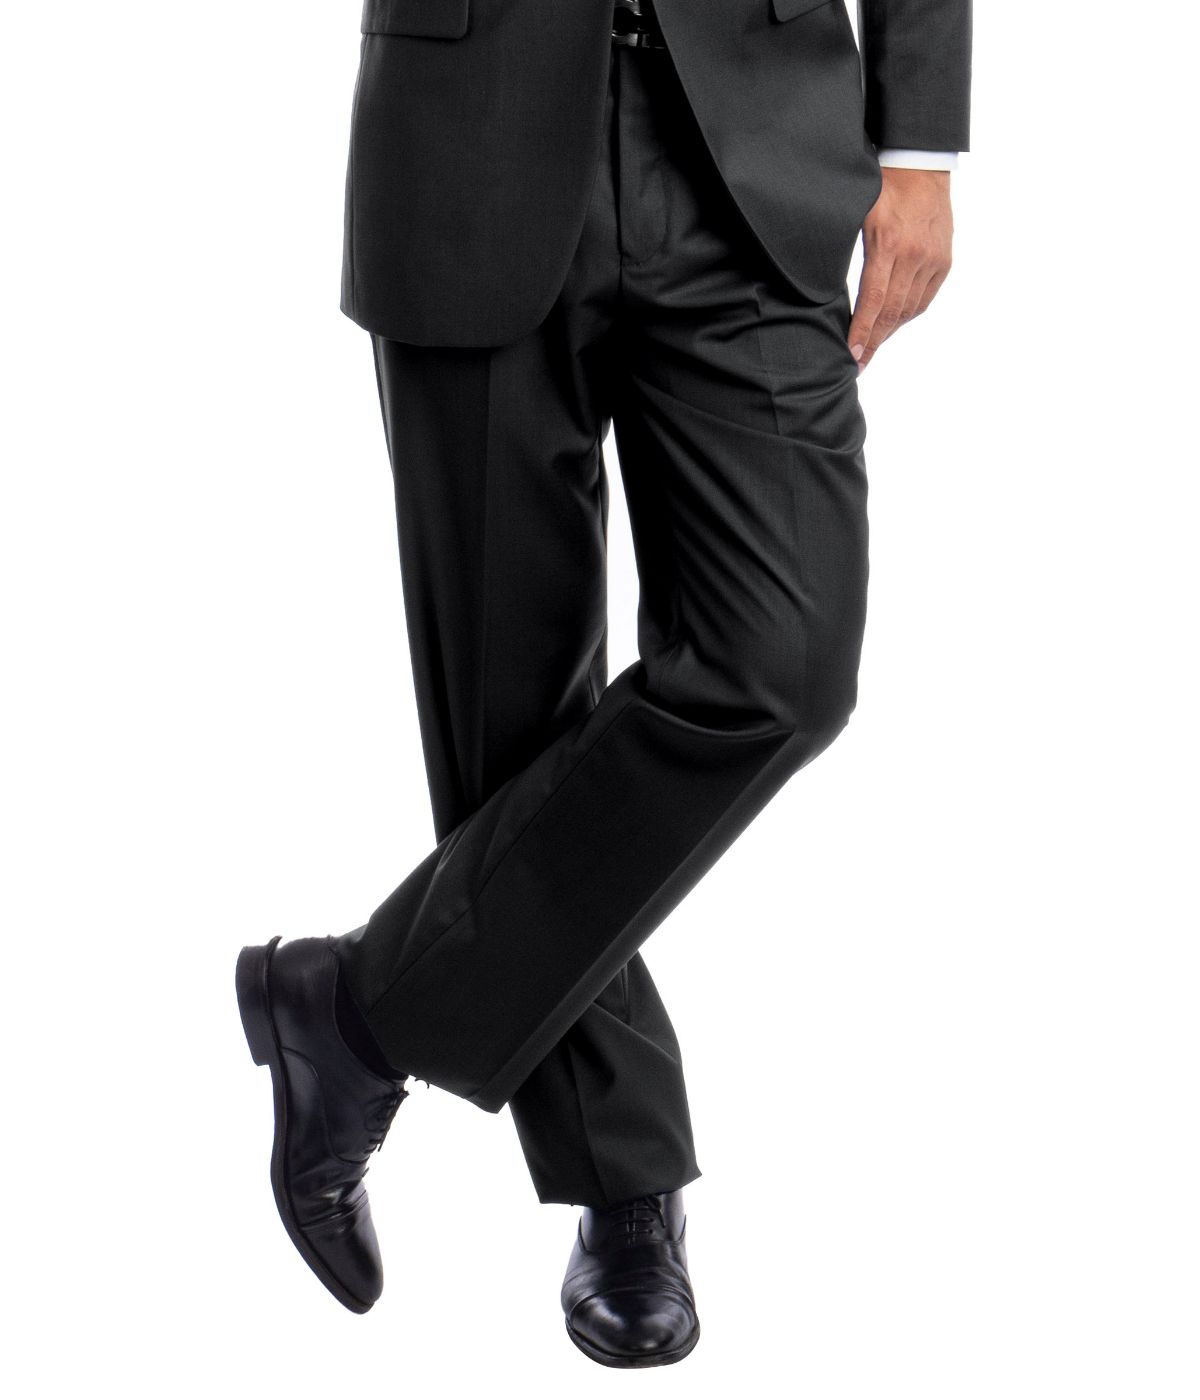 Men's Modern Fit Suits Two Piece Two Button Notch Lapel Suit Dk Grey